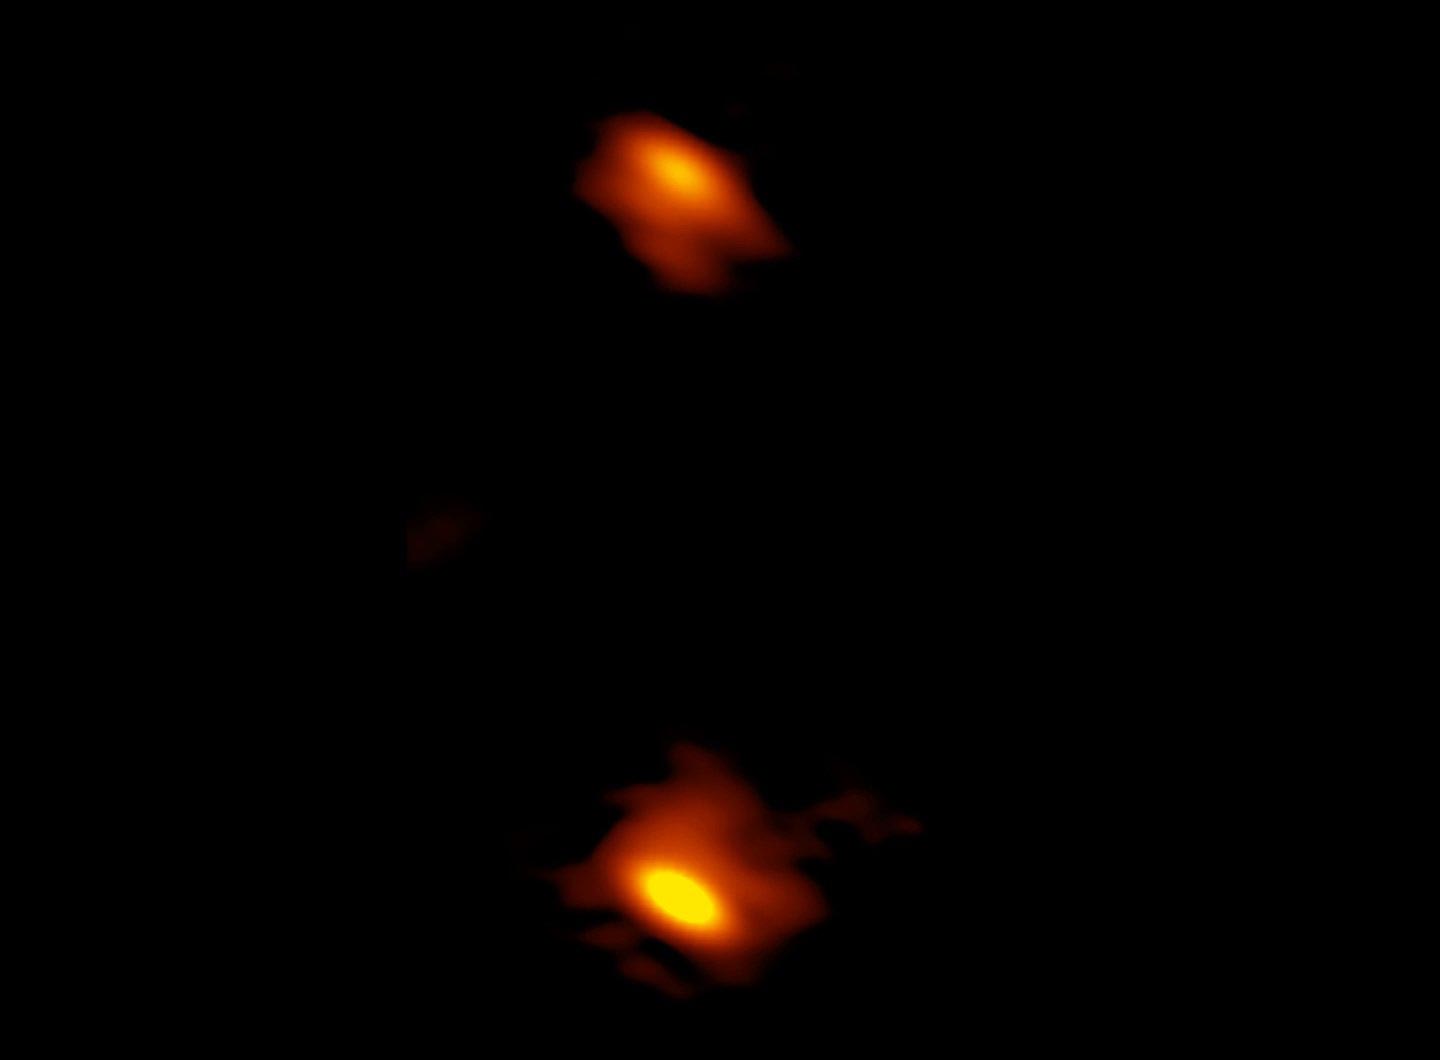 התמונה הזאת שצילם VLBA מראה שני חורים שחורים על-מסיביים, שמופיעים ככתמים עם פסים אדומים. החורים השחורים נמצאים במרכזה של גלקסיה אליפטית. הצבעים מייצגים שיפועים ספקטרליים שונים בפליטת גלי רדיו, כשאדום מראה את האזורים הכי צפופים סביב החורים השחורים. החור השחור מימין כנראה טרף לאחרונה כוכב מסיבי, שגרם לו לפלוט שני סילונים מאוד מהירים. הקצוות של הסילונים האלה מופיעים ככתמים ירוקים מעל ומתחת לחור השחור. העצם הזה, ששמו J0405+3803, נקרא CSO כי הסילונים שלו יחסית קרובים (או קומפקטיים) בהשוואה לחורים שחורים אחרים עם סילונים הרבה יותר גדולים. קרדיט: H.L. Maness/Grinnell College